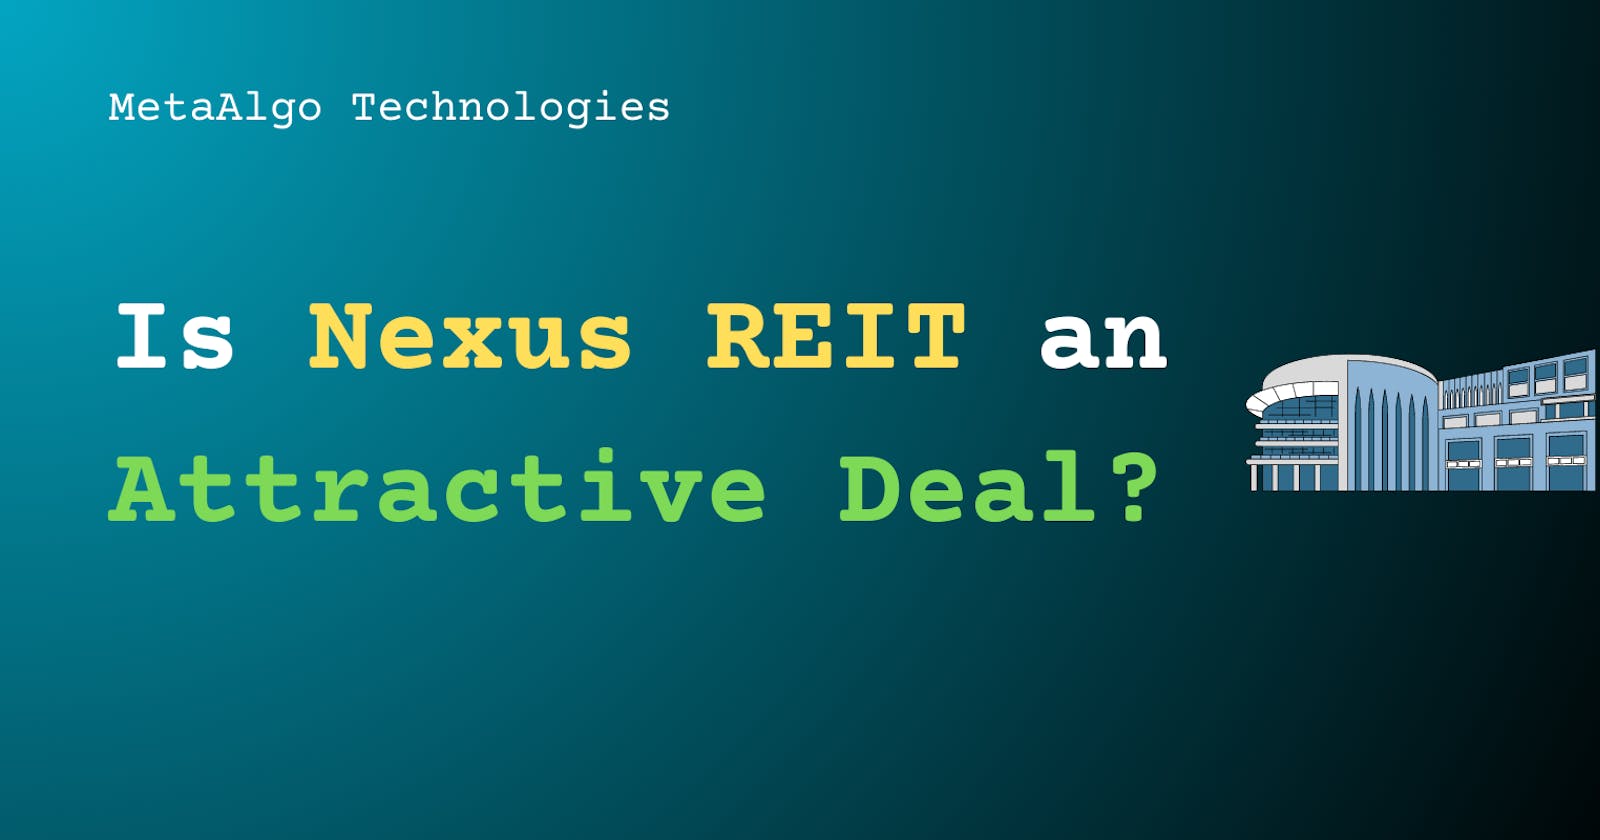 Is Nexus REIT an Attractive Deal?